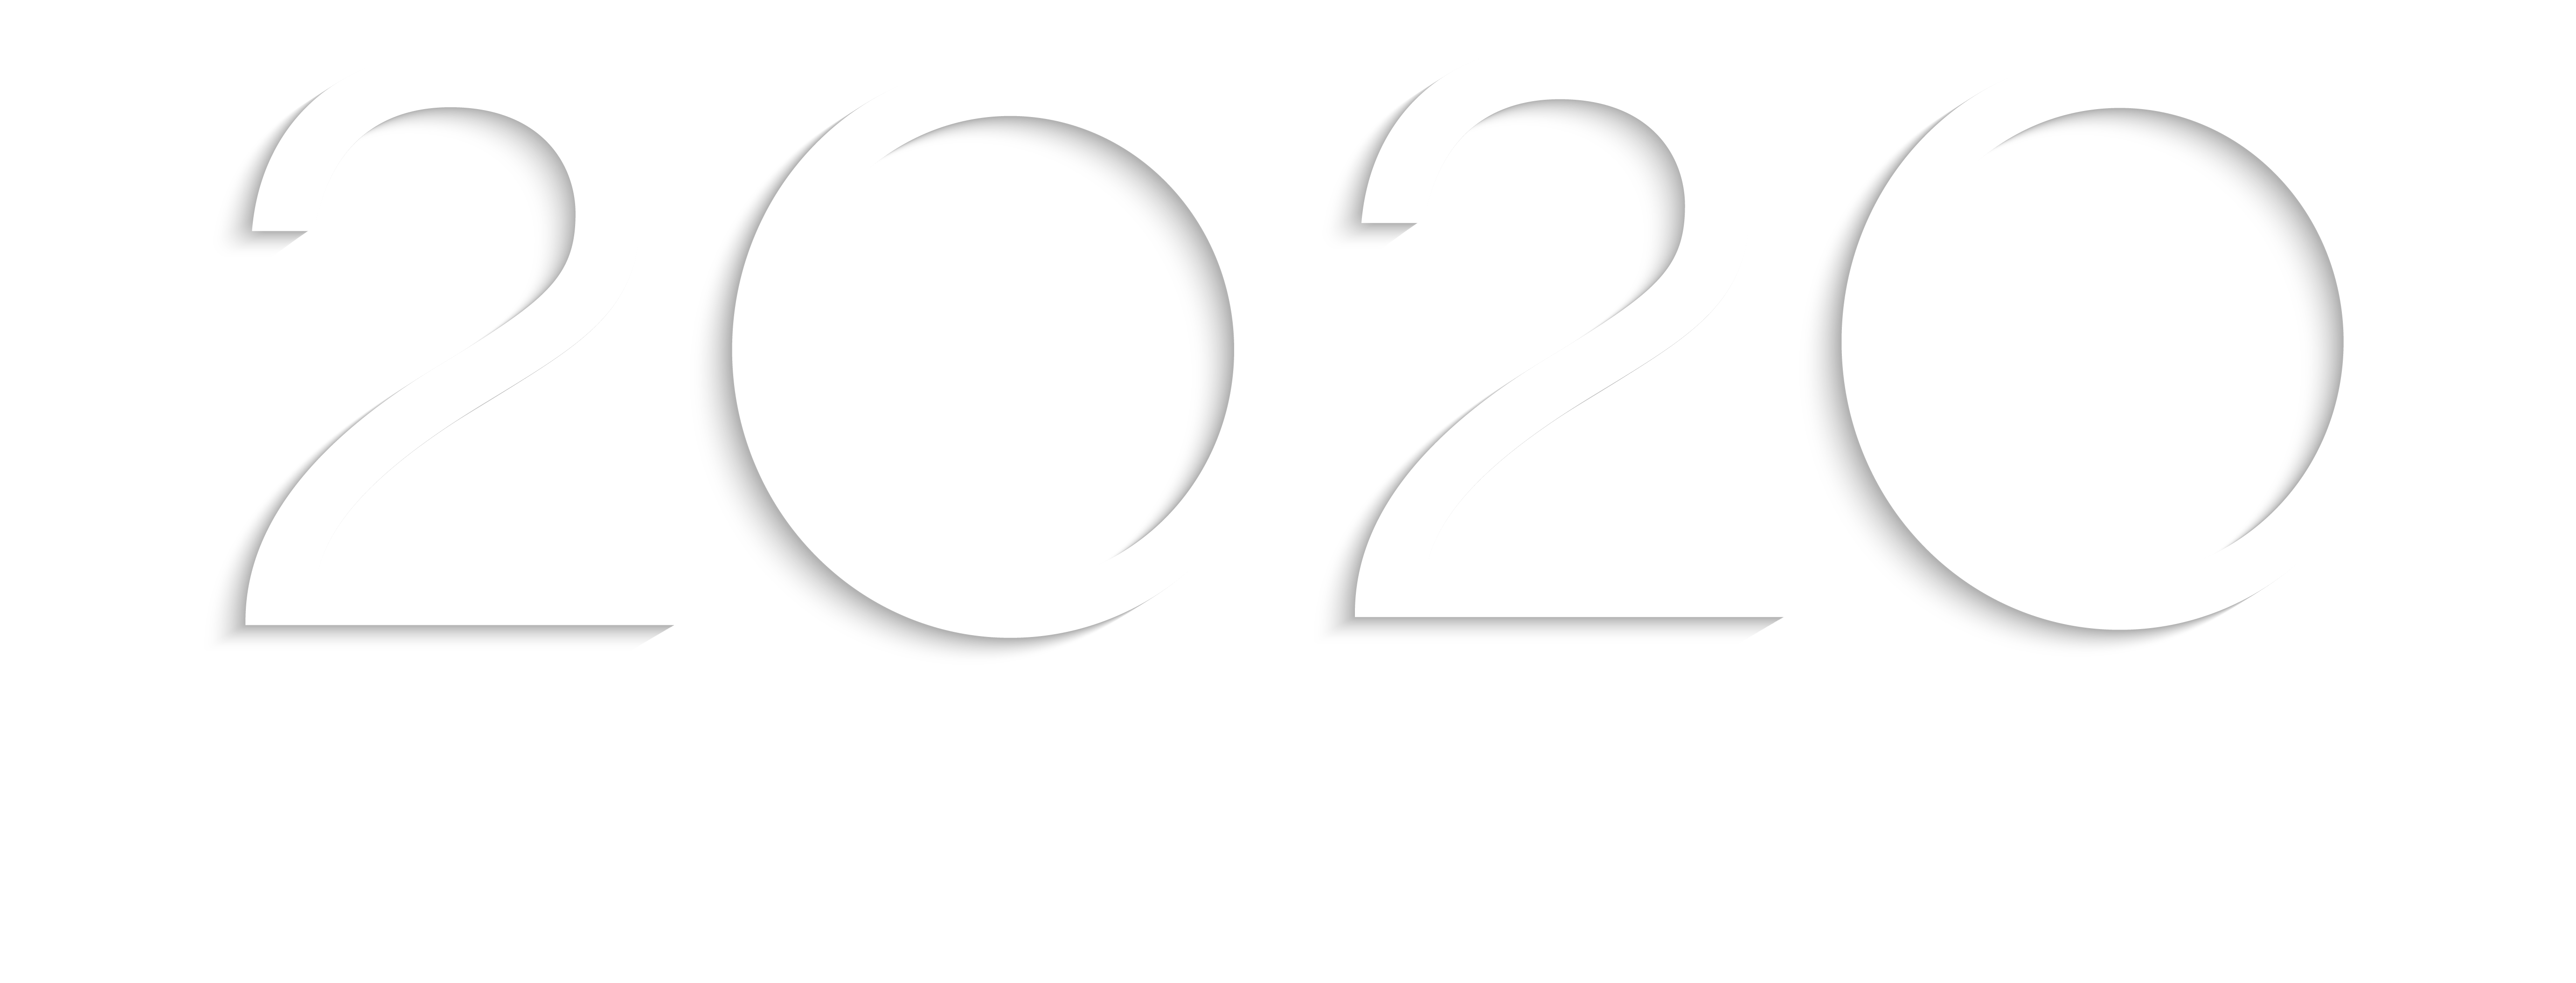 TWENTY IN DATA 2020